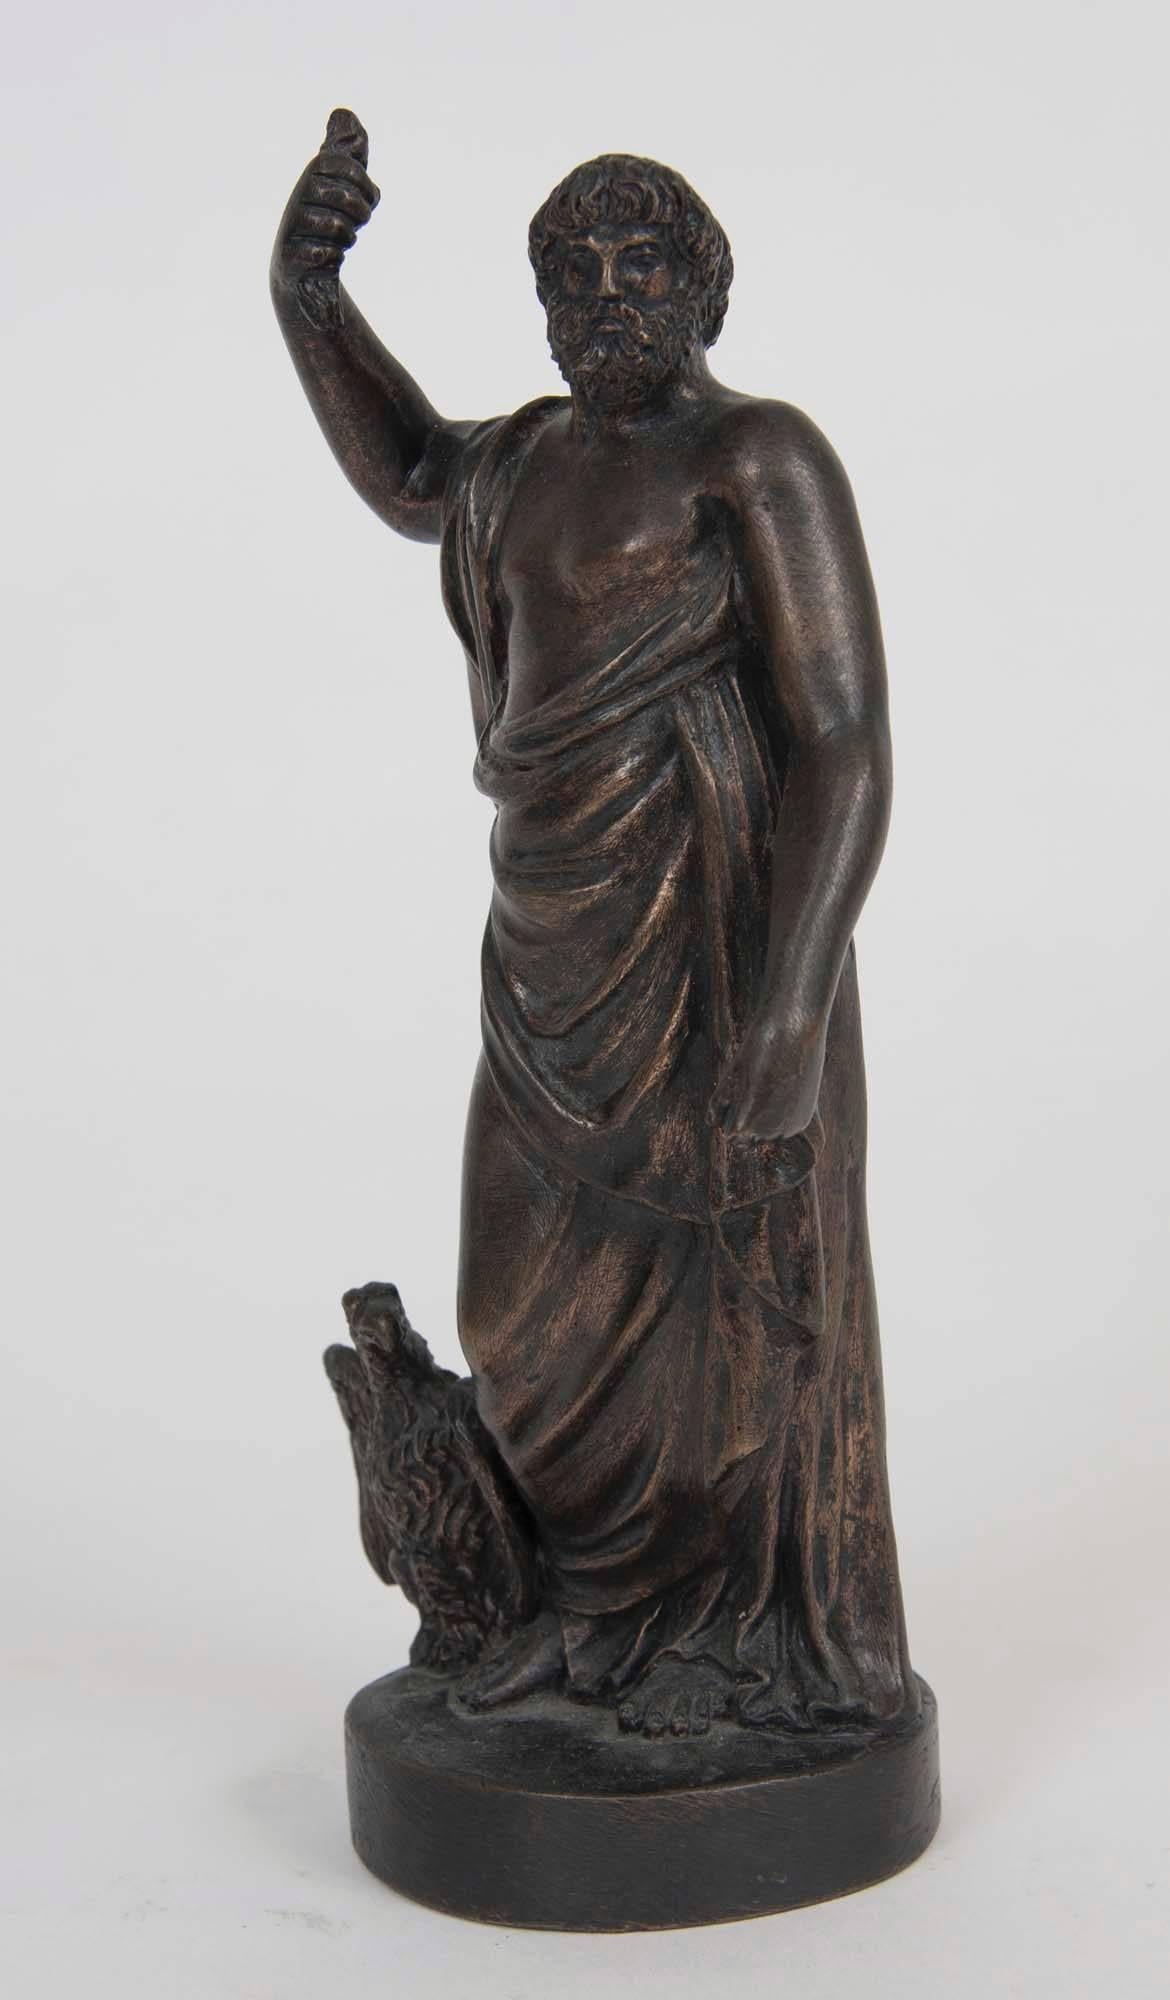 Bronzefigur des Zeus in Begleitung eines Adlers, seiner symbolischen Gestalt.